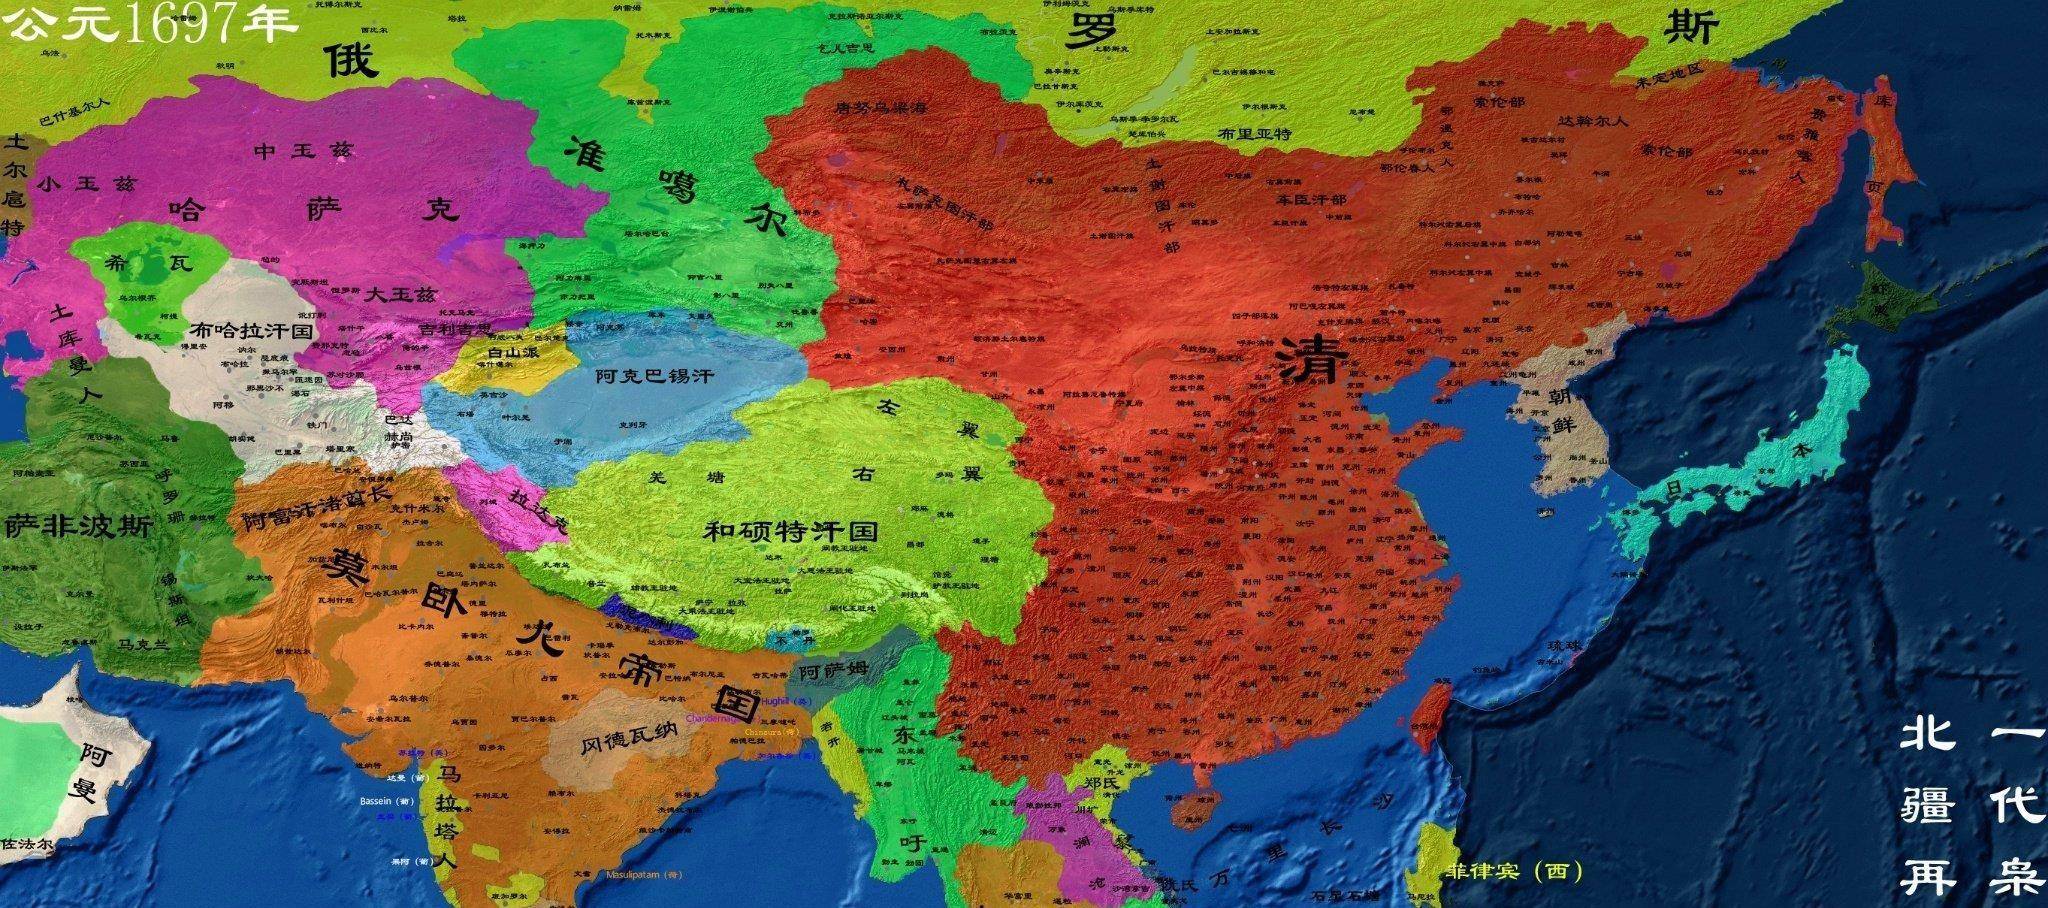 清朝前期还是非常强大的,它的领土扩张基本就是谁挡杀谁的步骤